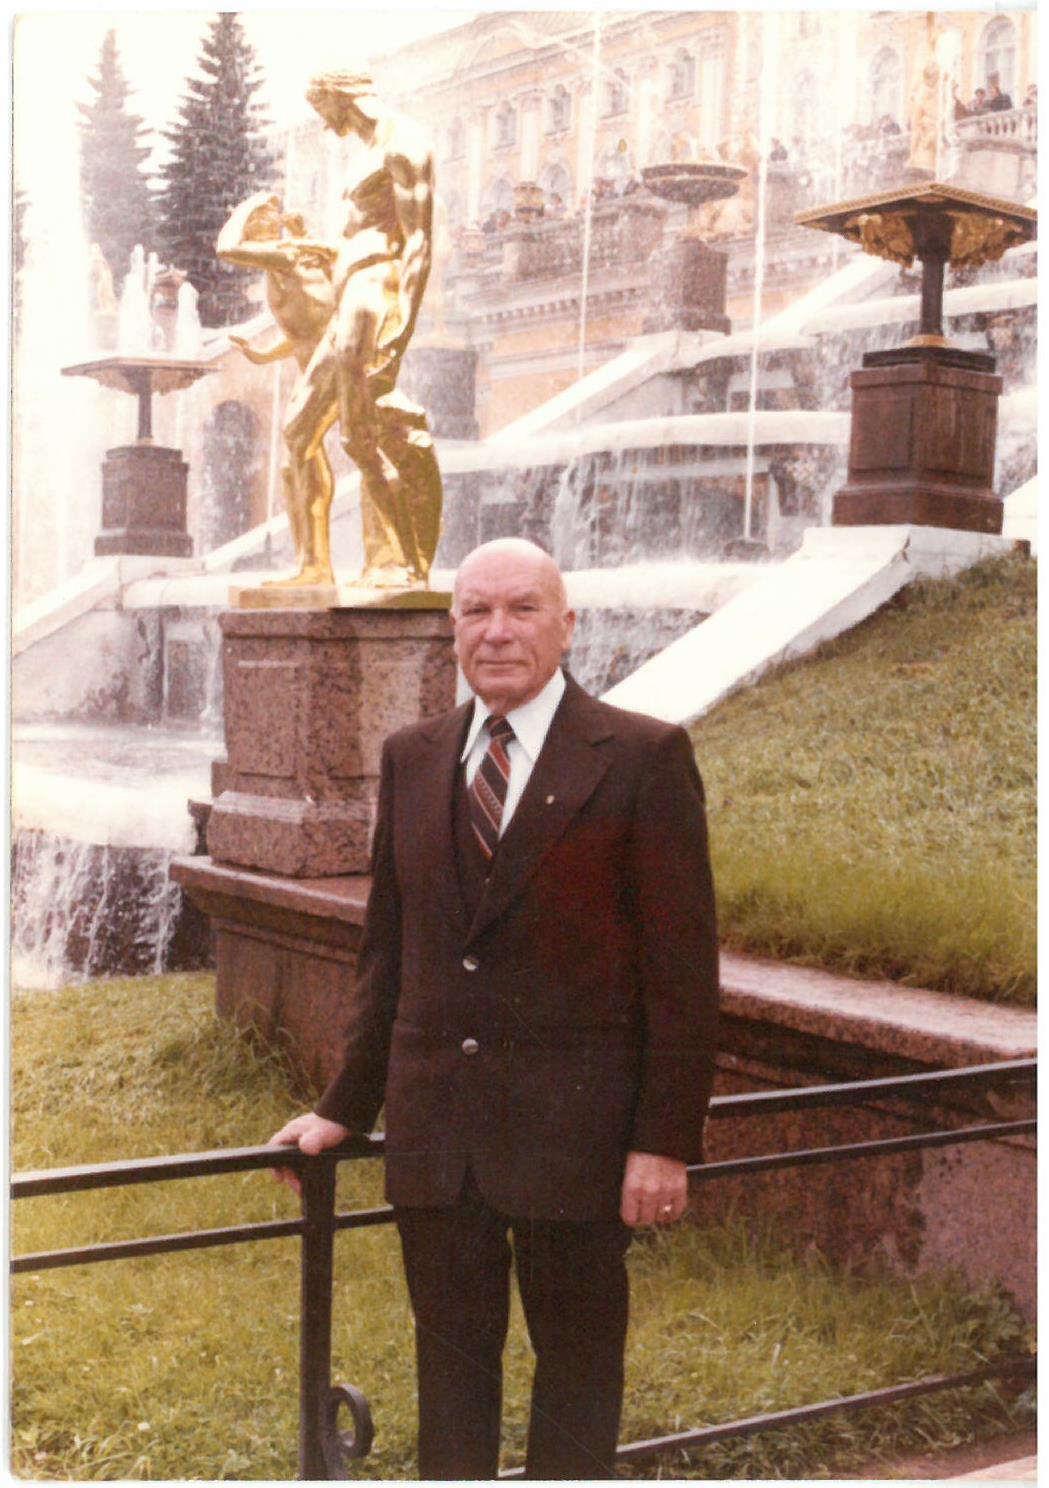 Kazys Balčiūnas prie Peterhofo rūmų. Sankt Peterburgas, Rusija. 1979 m. liepos mėn.